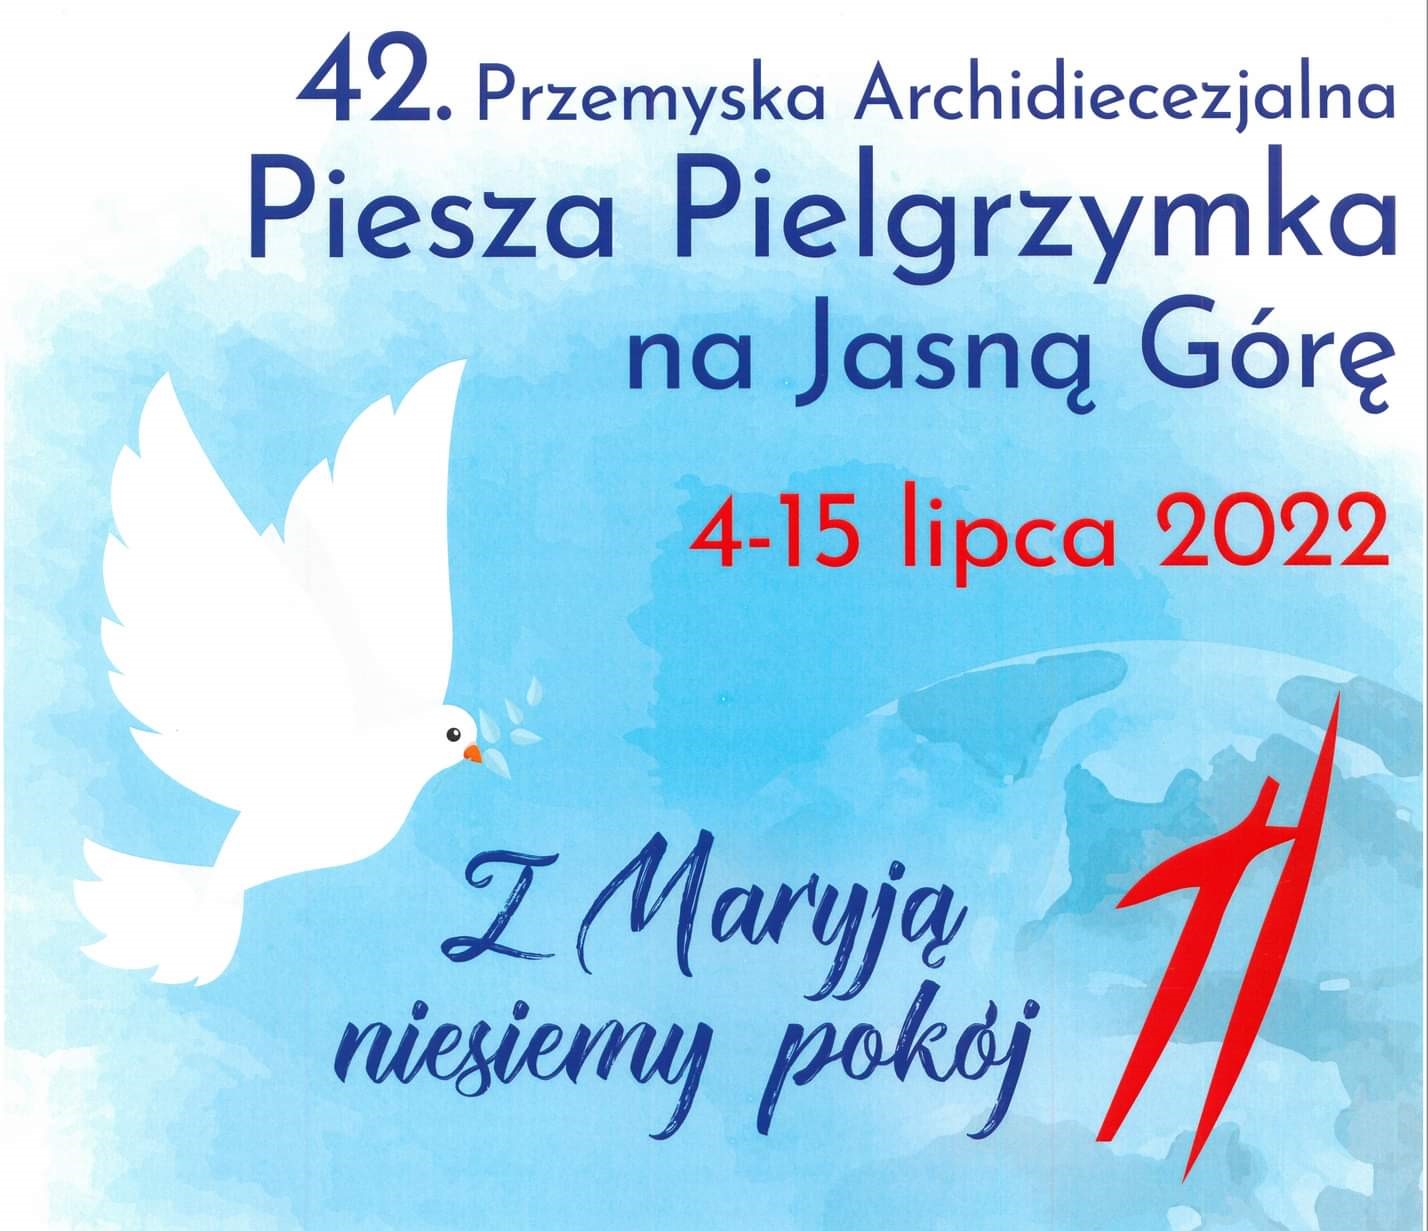 42. Przemyska Archidiecezjalna Piesza Pielgrzymka na Jasną Górę